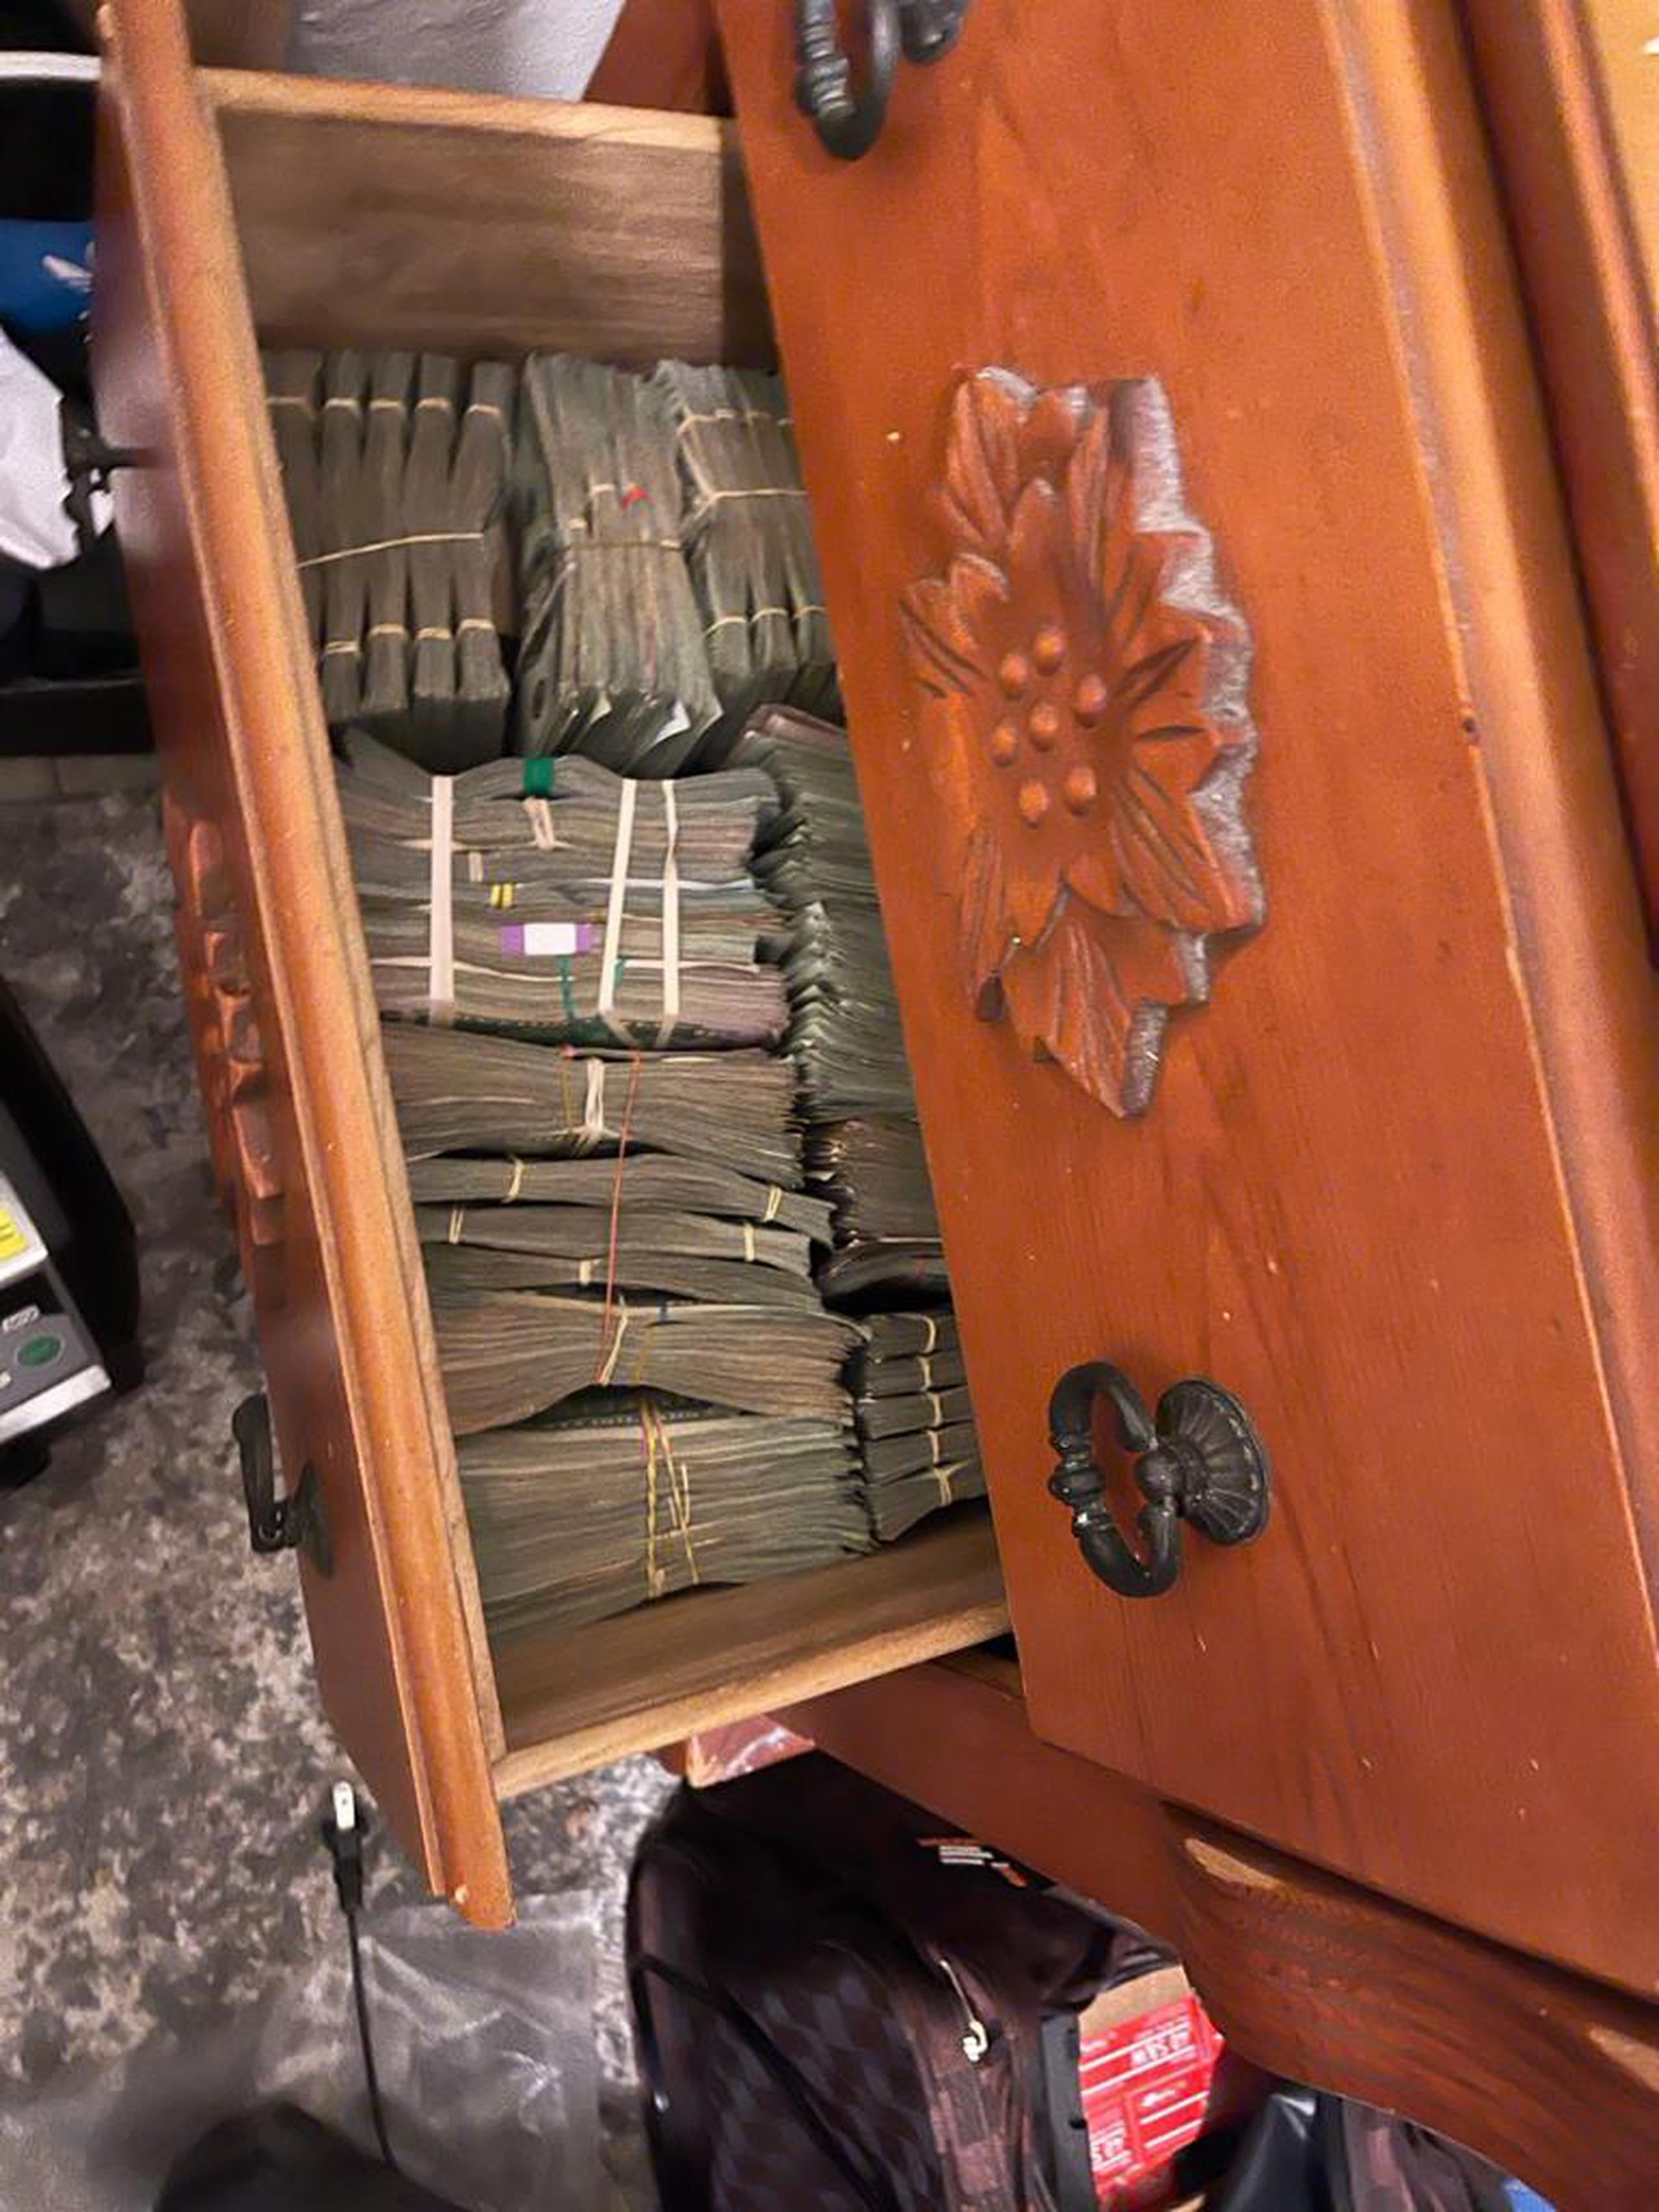 Parte del cargamento de drogas, armas y dinero incautado en residencia de San Juan.